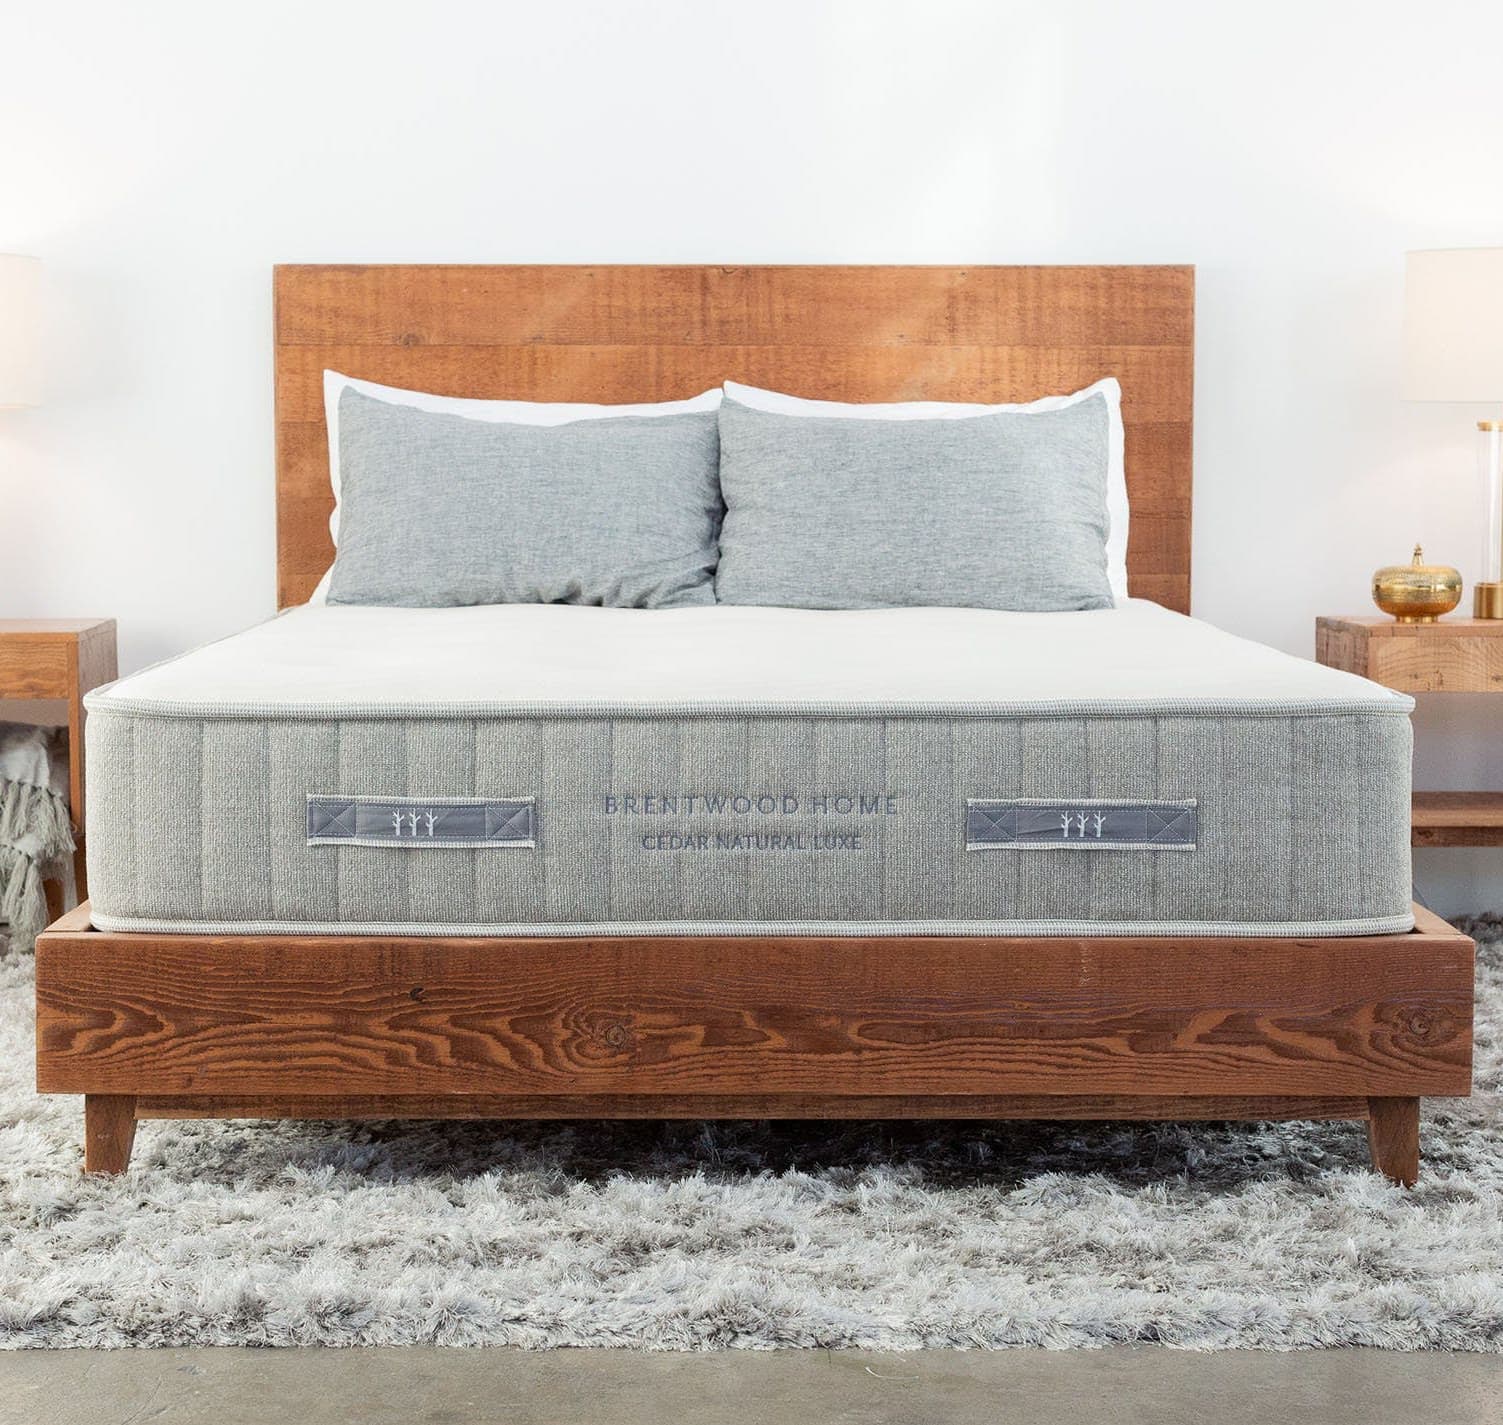 cedar mattress with no topper